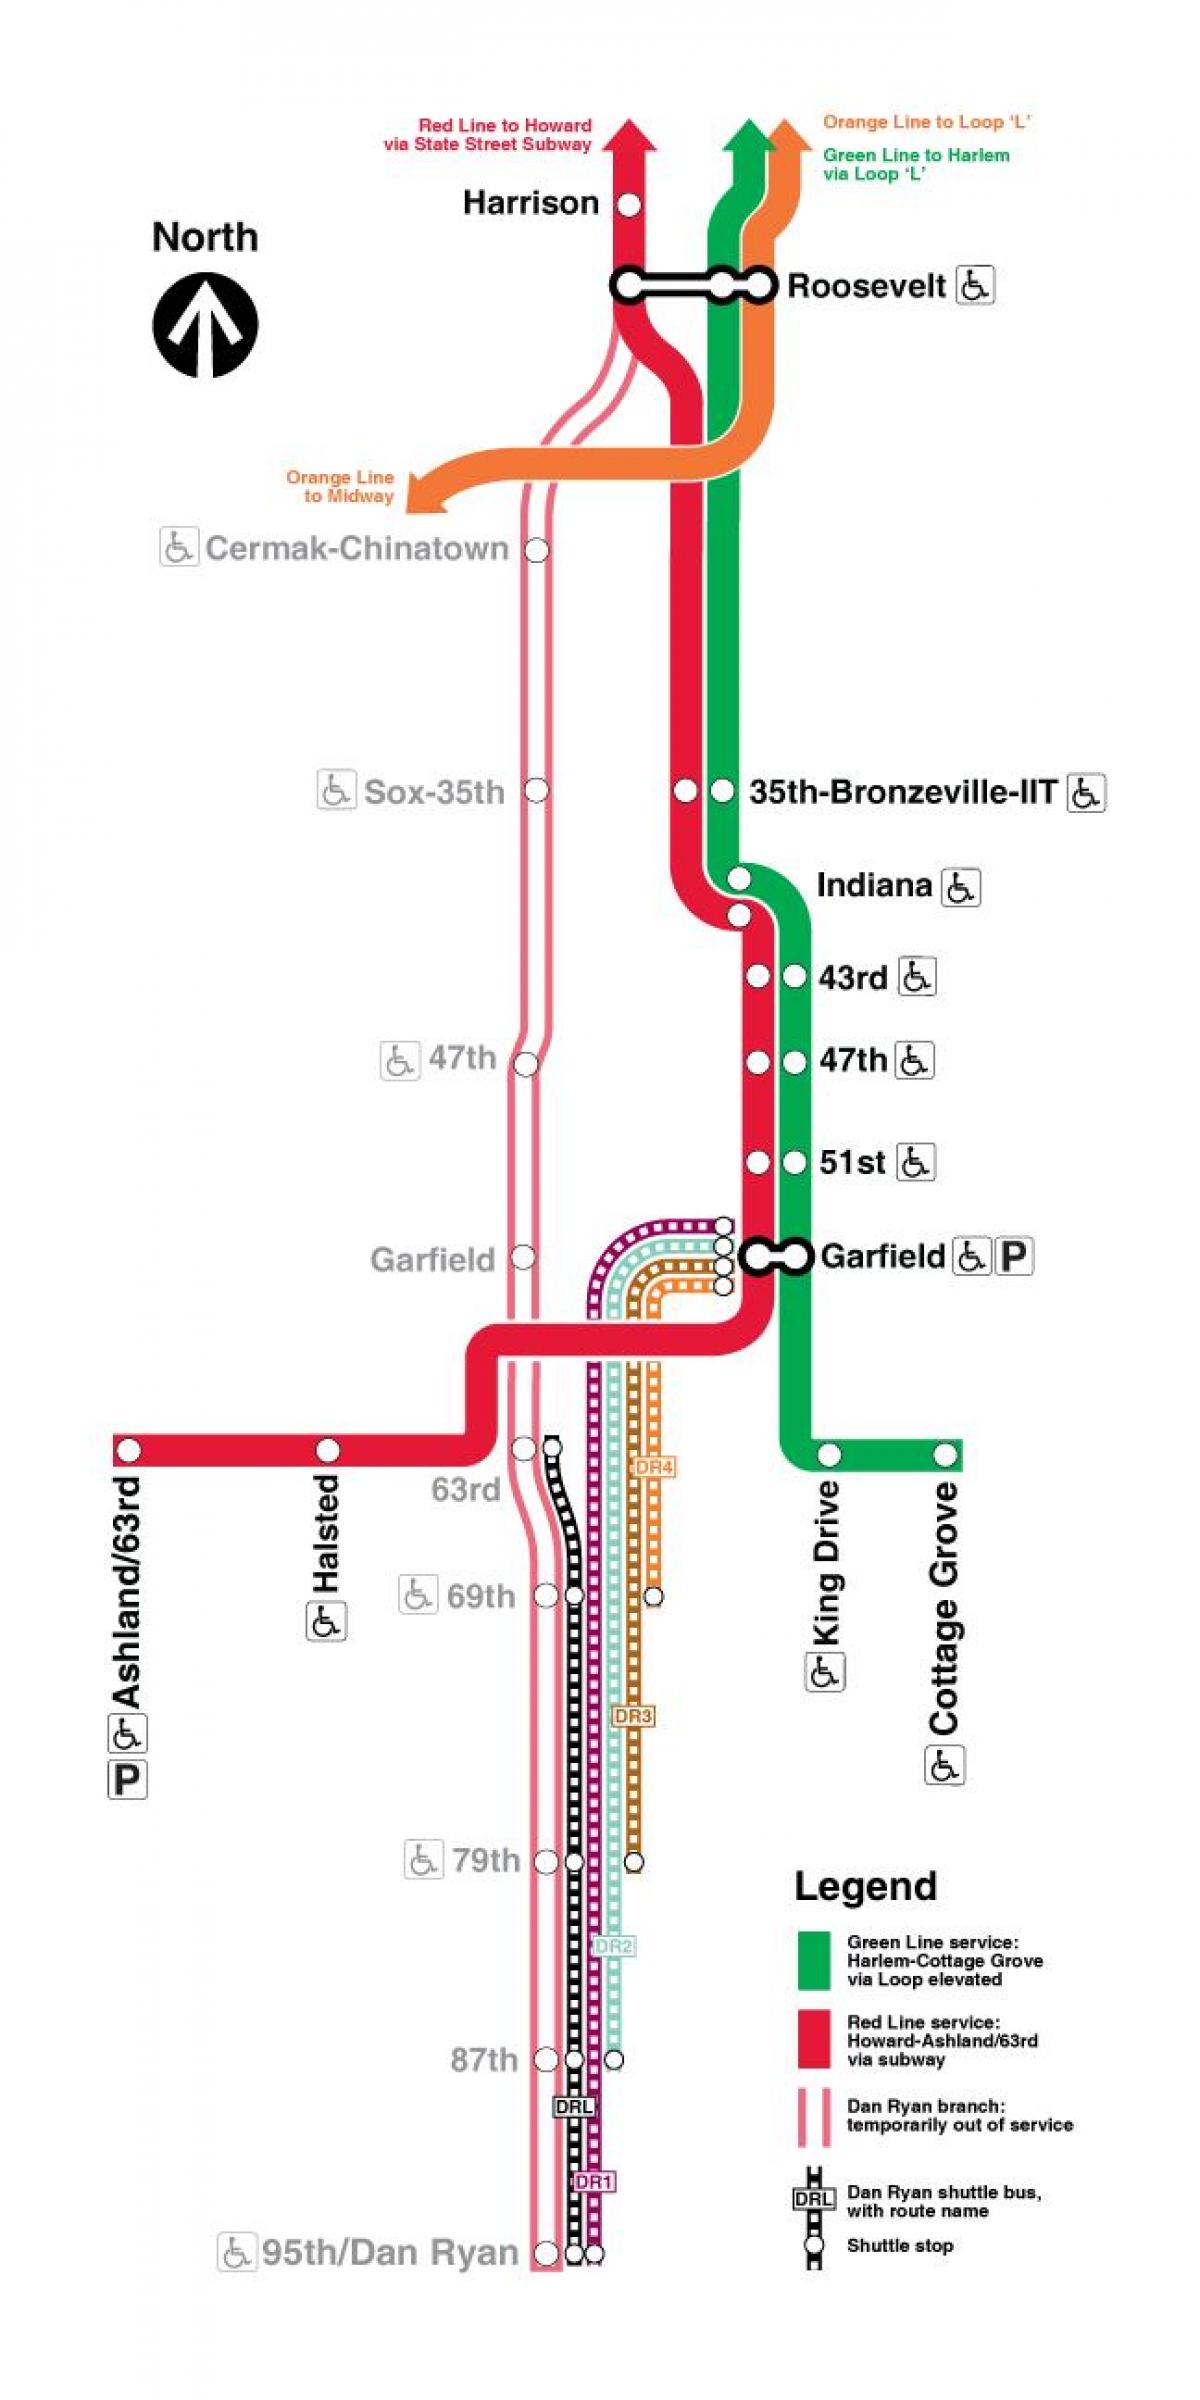 Chicago tog kart røde linje